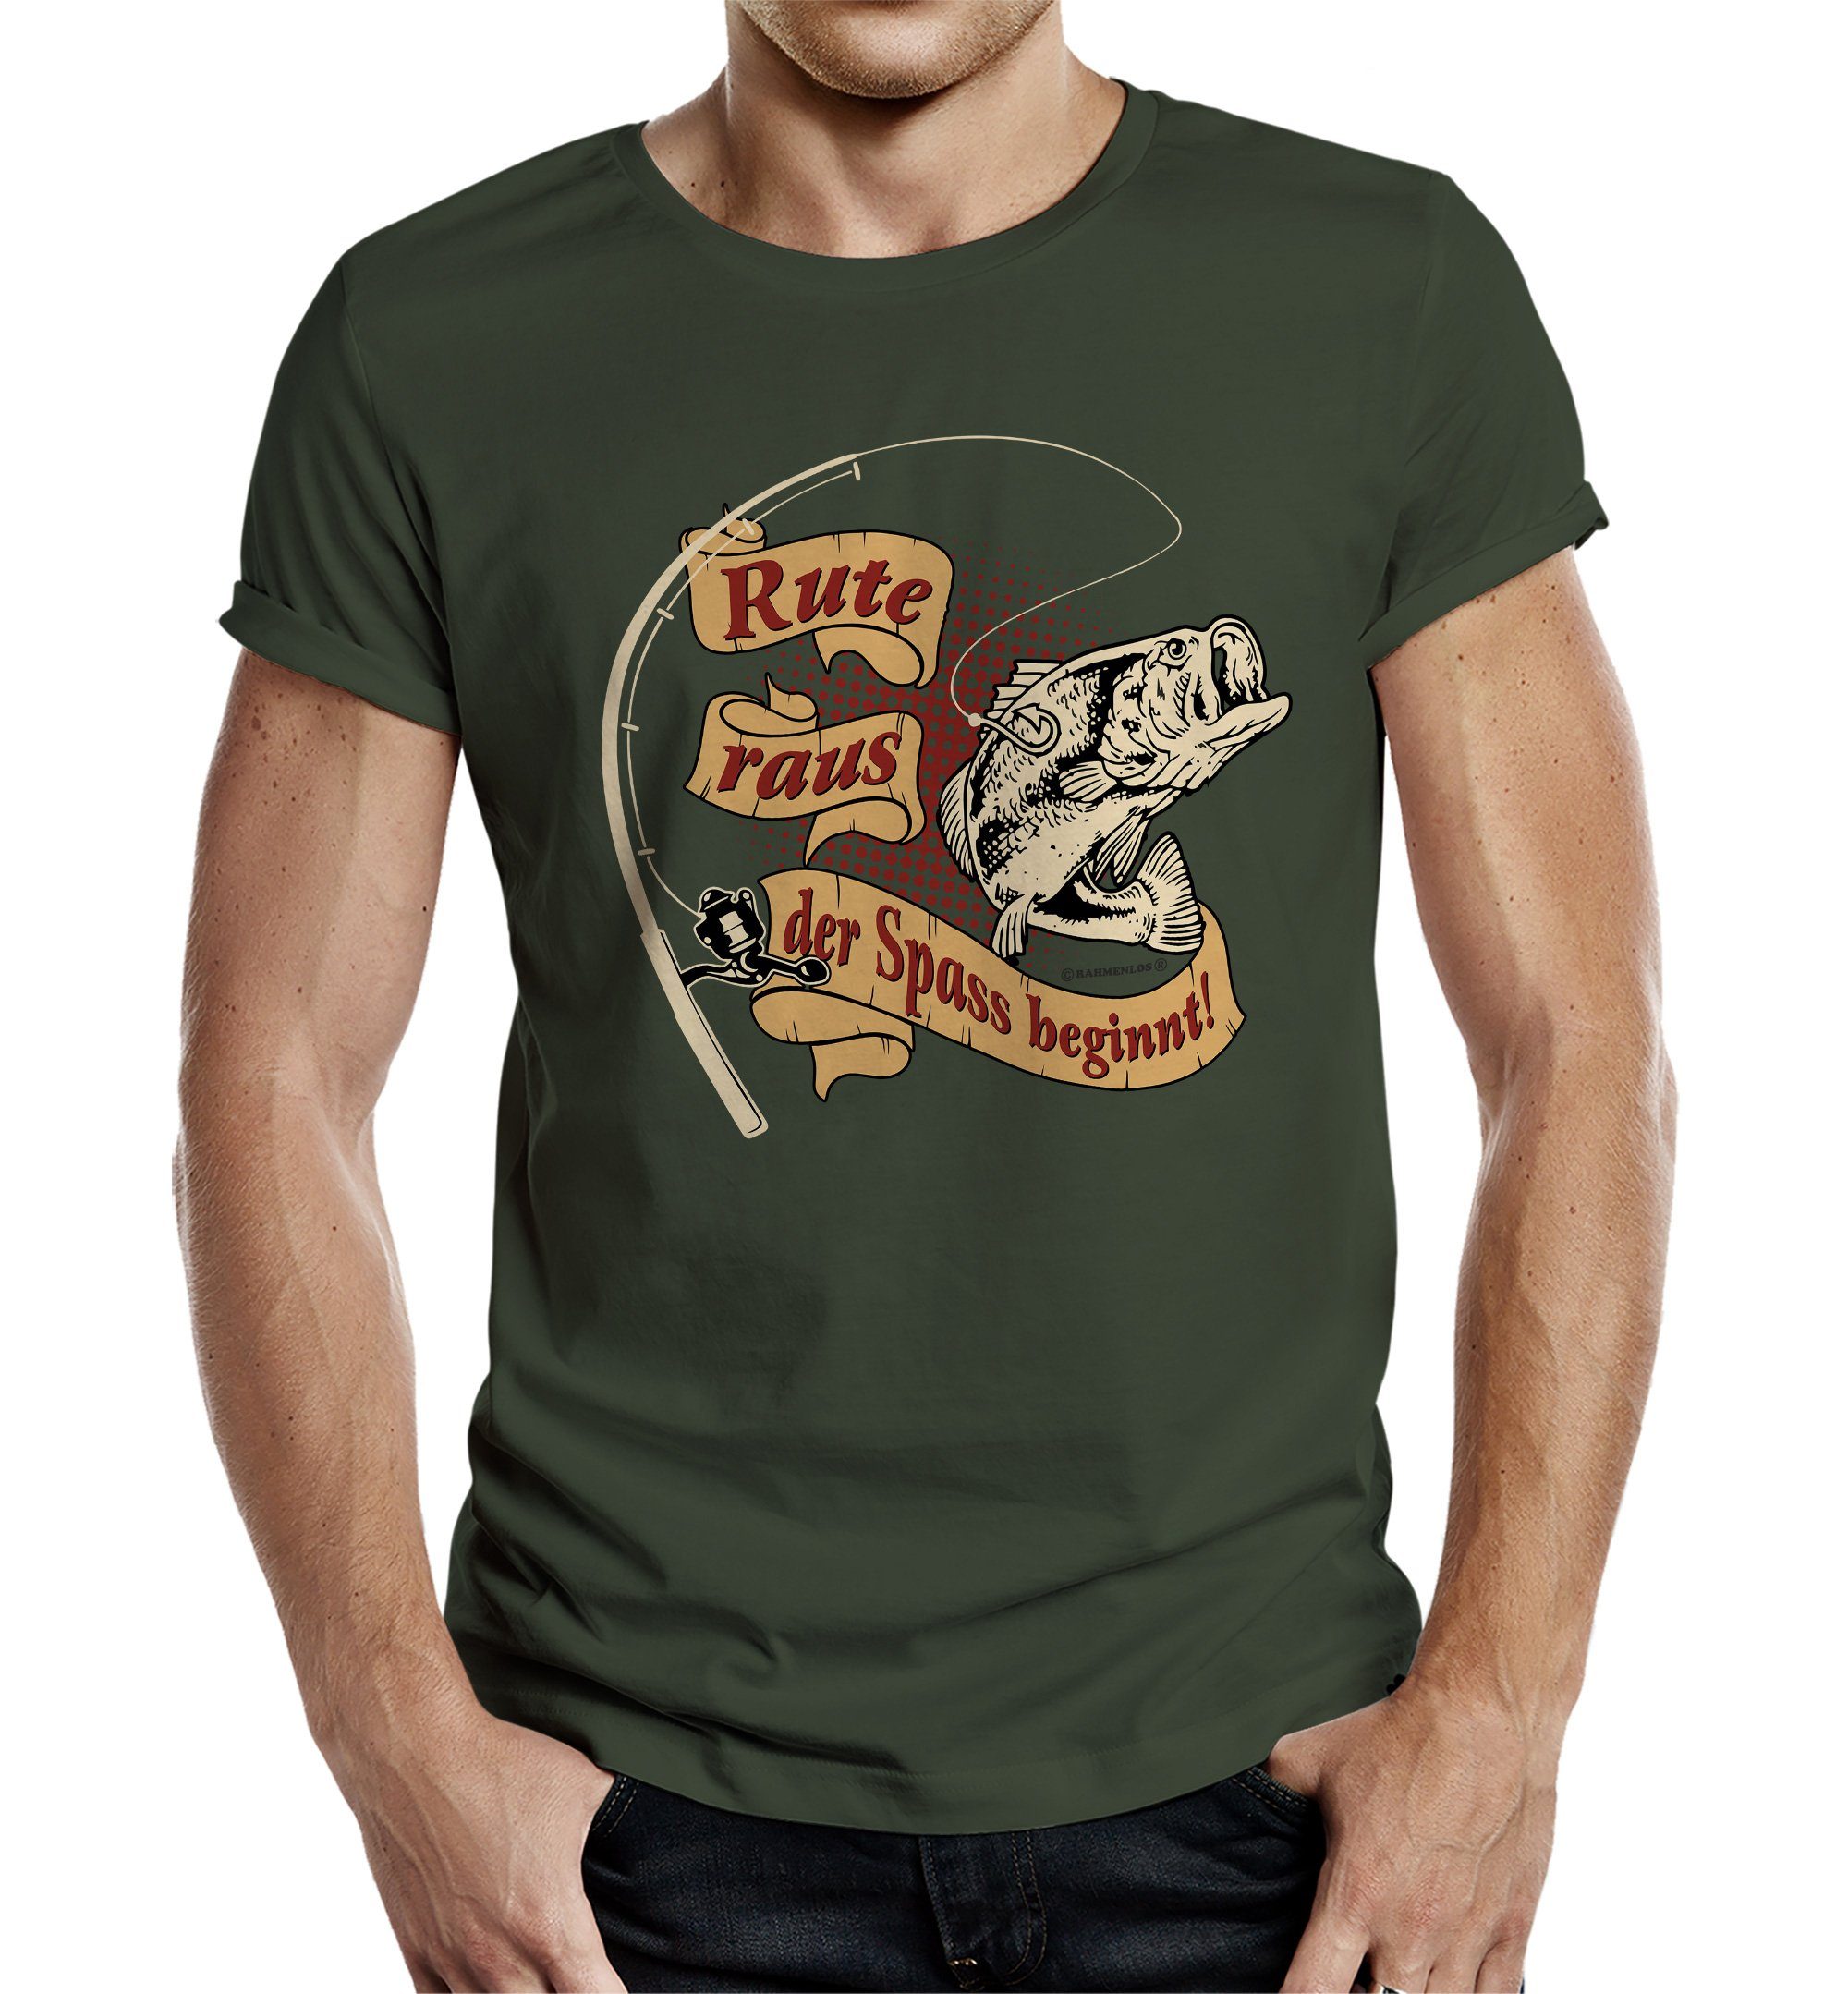 Rahmenlos T-Shirt als Geschenk für Angler und Fischer: Rute raus, der Spass beginnt | T-Shirts